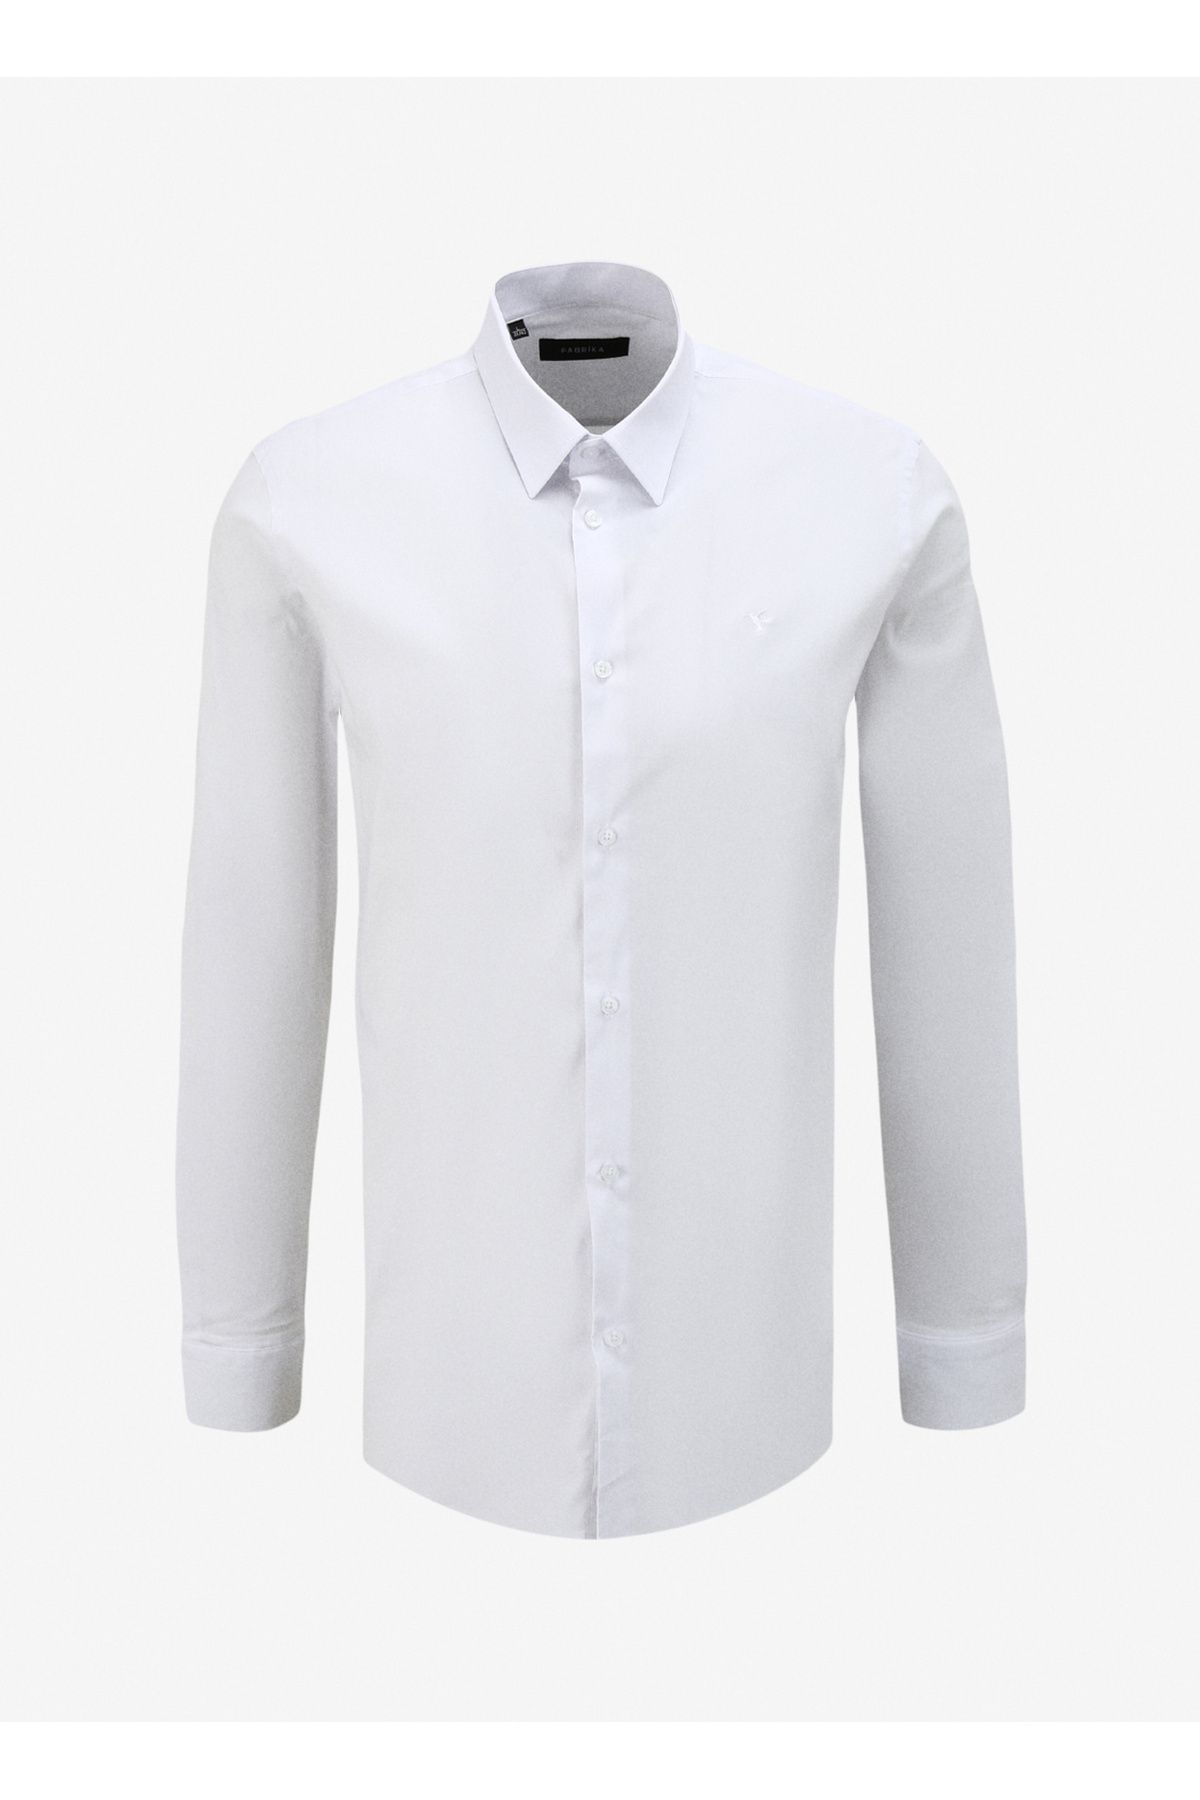 Fabrika Slim Fit Gömlek Yaka Düz Beyaz Erkek Gömlek F4SM-GML 1003